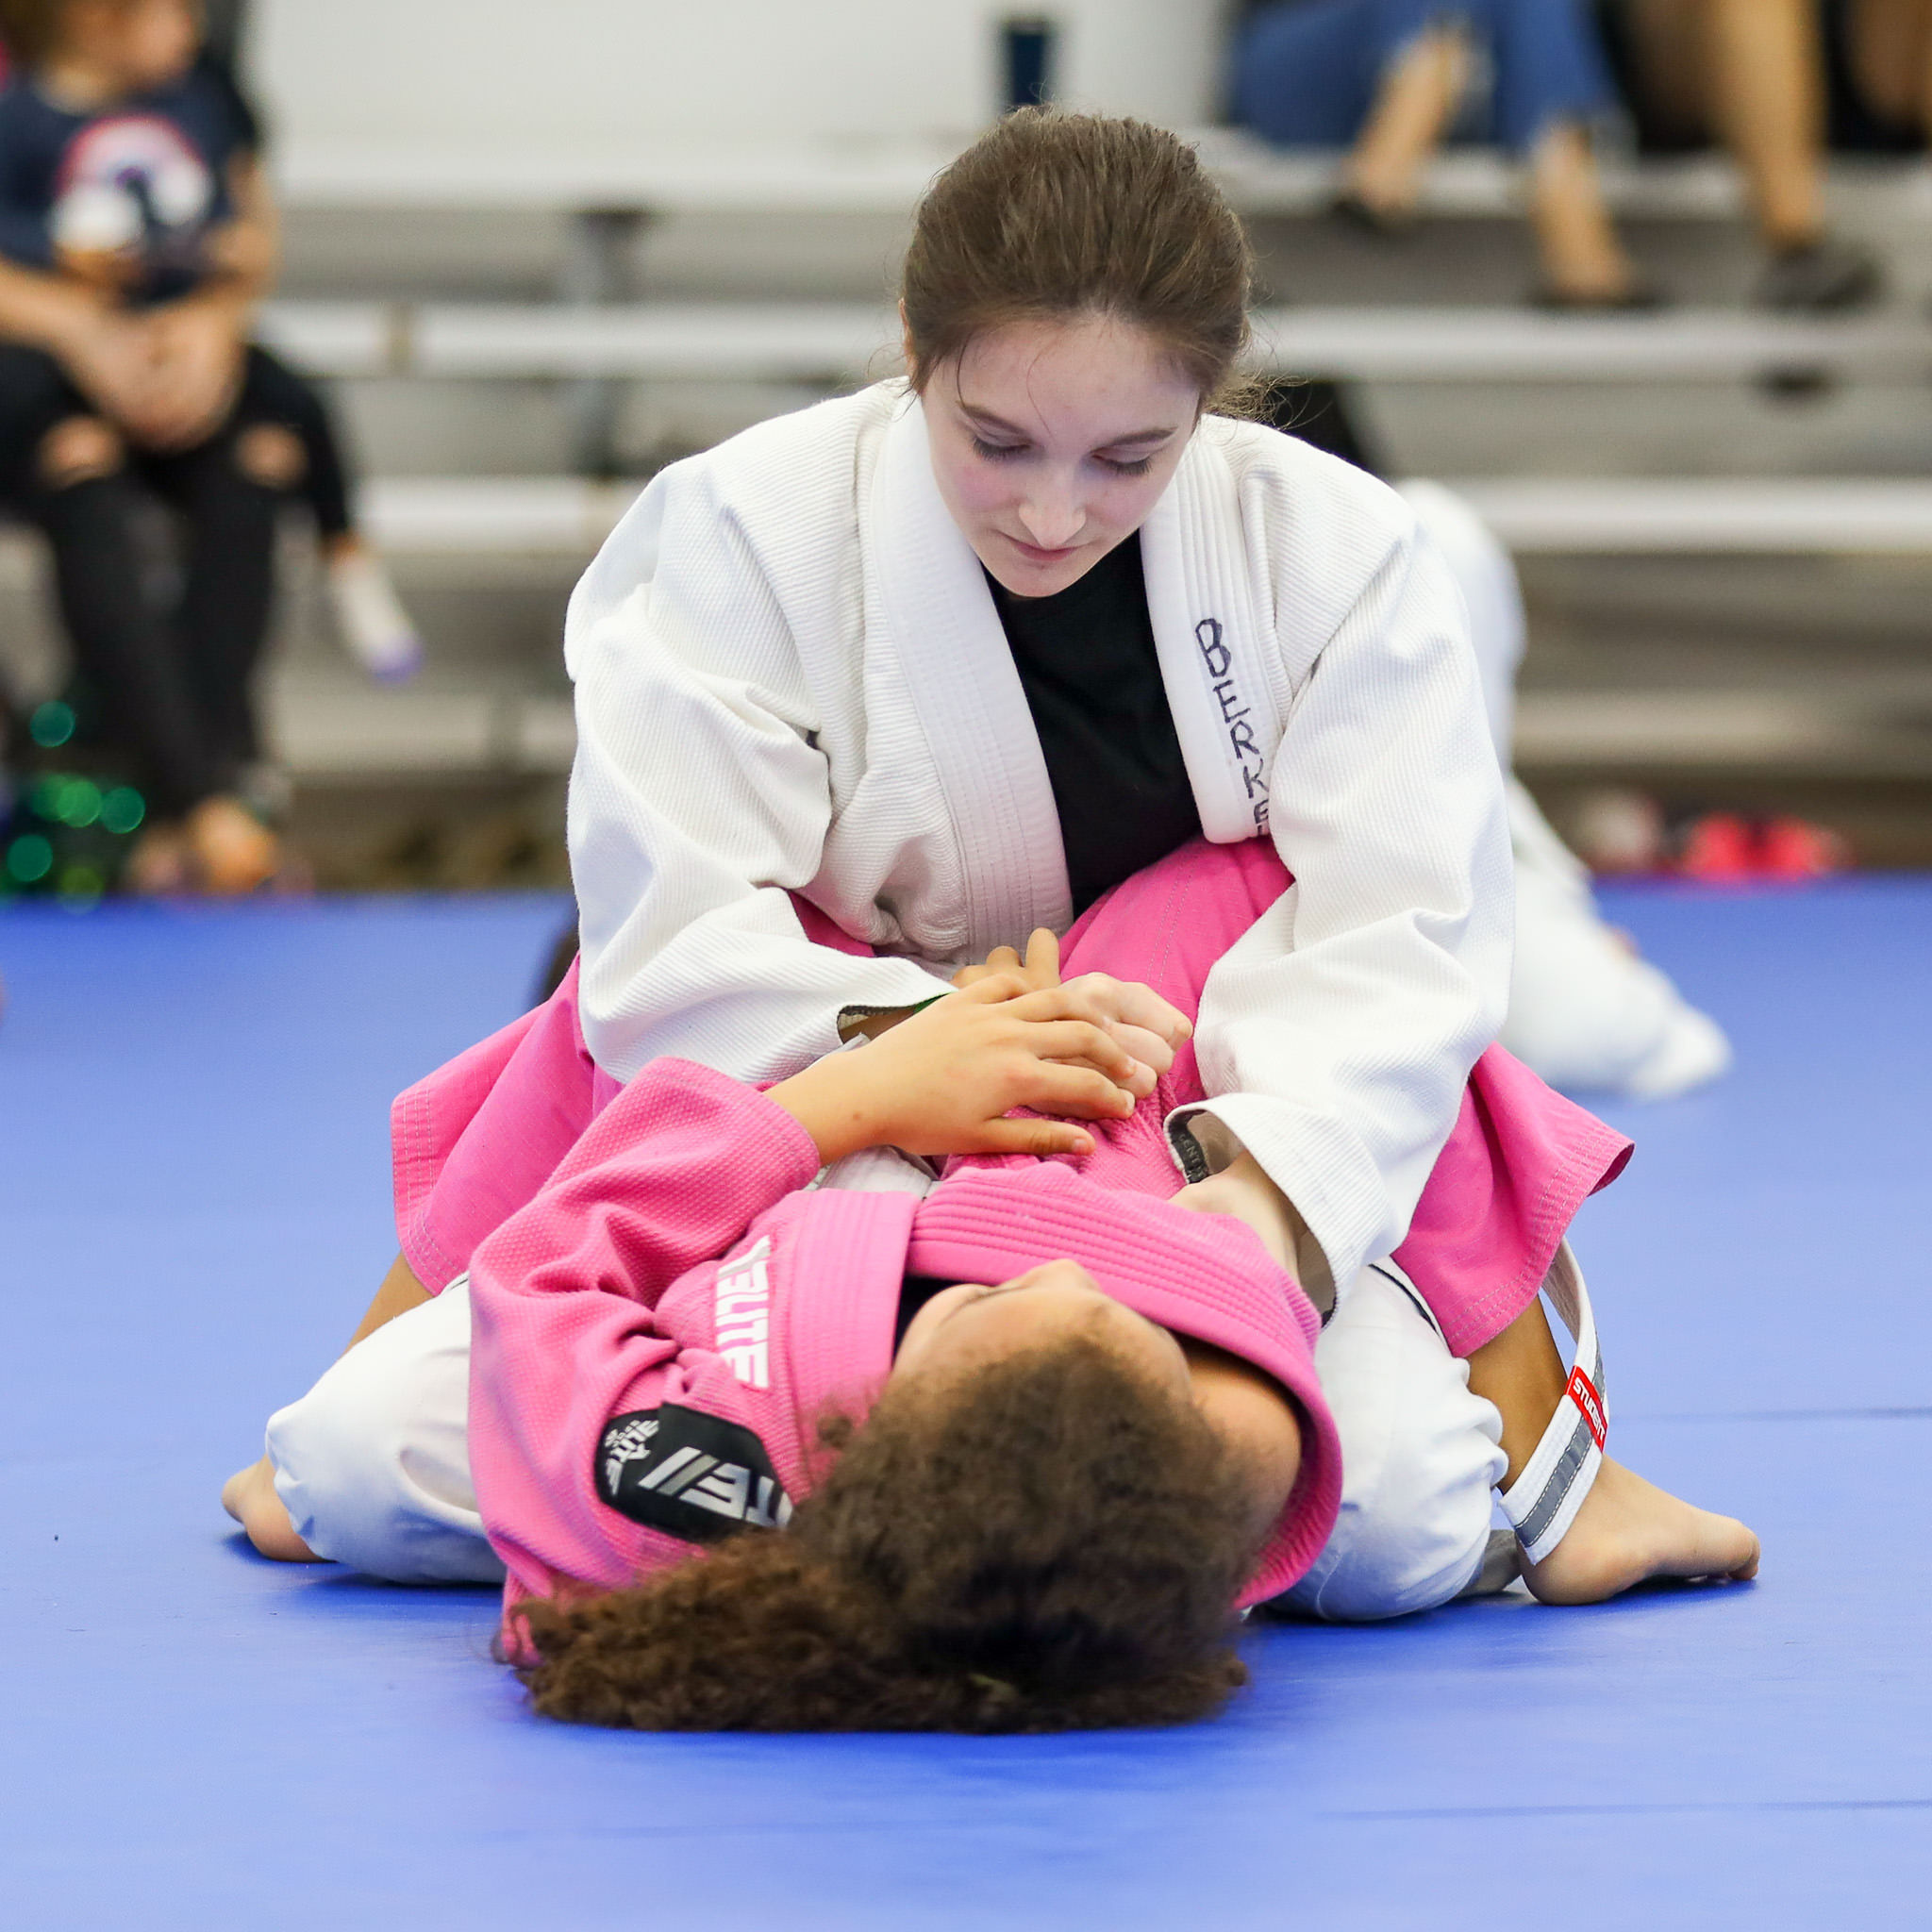 7 Reasons Women Should Practice Jiu Jitsu